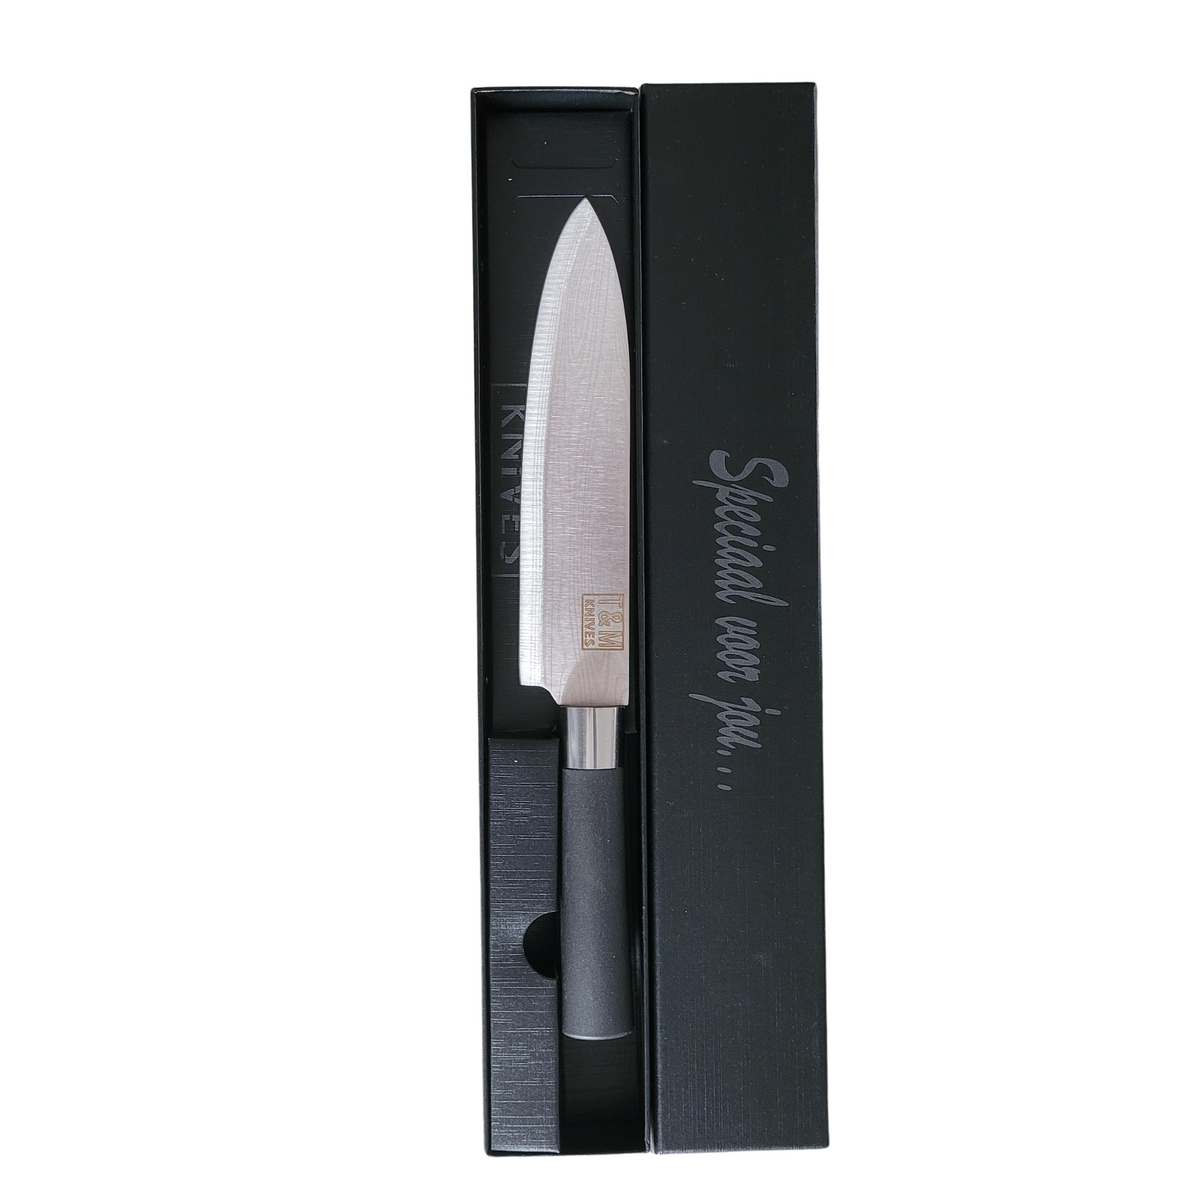 T&amp;M Knives® - Kochmesser Trudes - 30 cm Küchenmesser Steinharter Stahl